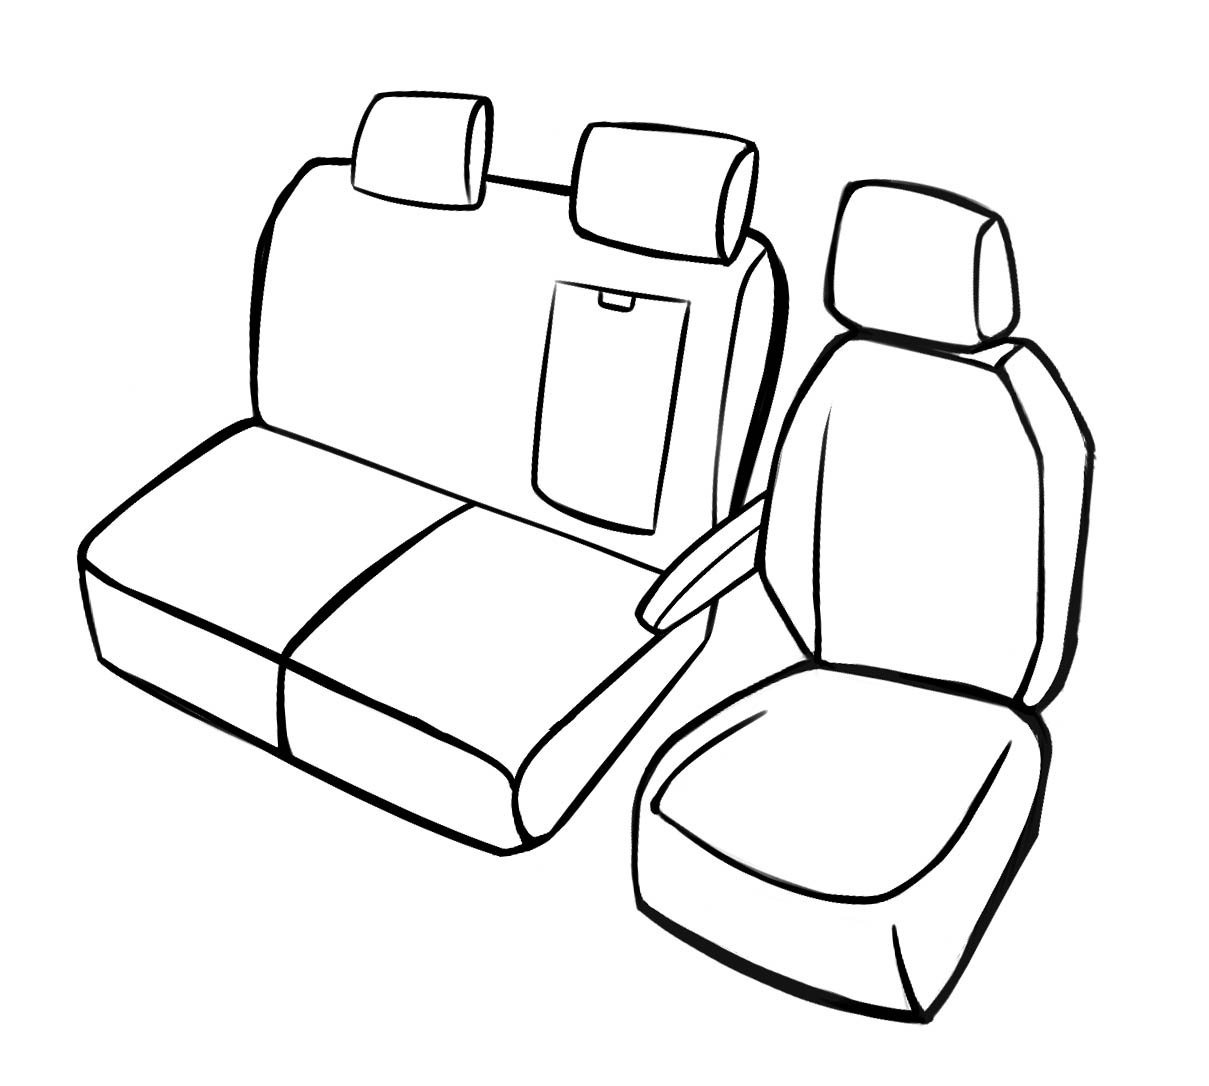 Premium autozetelhoezen compatibel met Ford Transit enkele zetel en dubbele bank vooraan in kunstleder vanaf bouwjaar 2014 - Vandaag